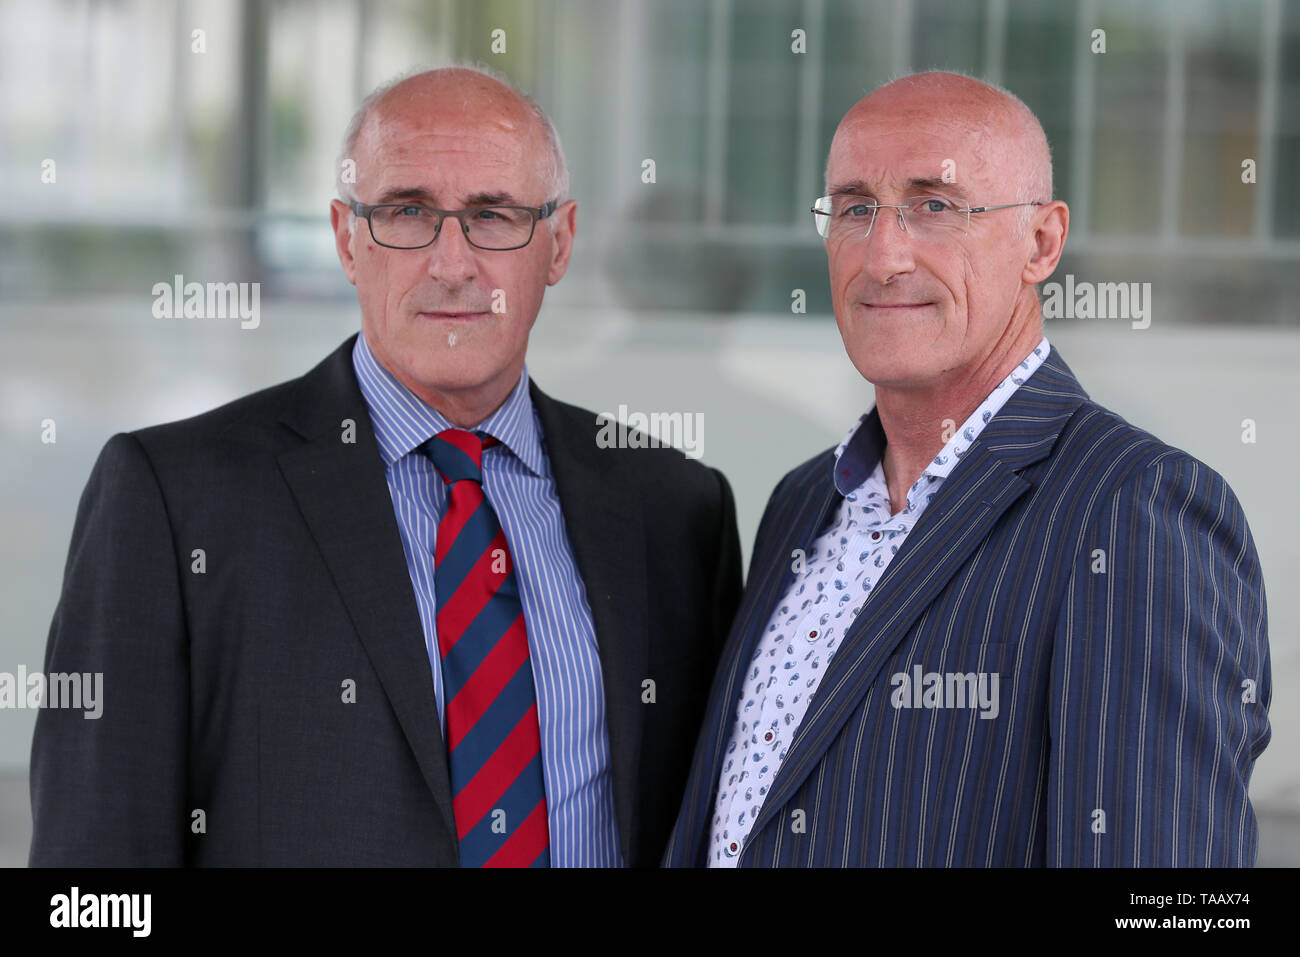 Hämophile Zwillinge Nigel (links) und Simon Hamilton, der Hep C durch das verseuchte Blut Produkt beauftragt, zur Teilnahme an der BRITISCHEN infiziertes Blut Untersuchung in Belfast, wo sie Beweise gab. Stockfoto